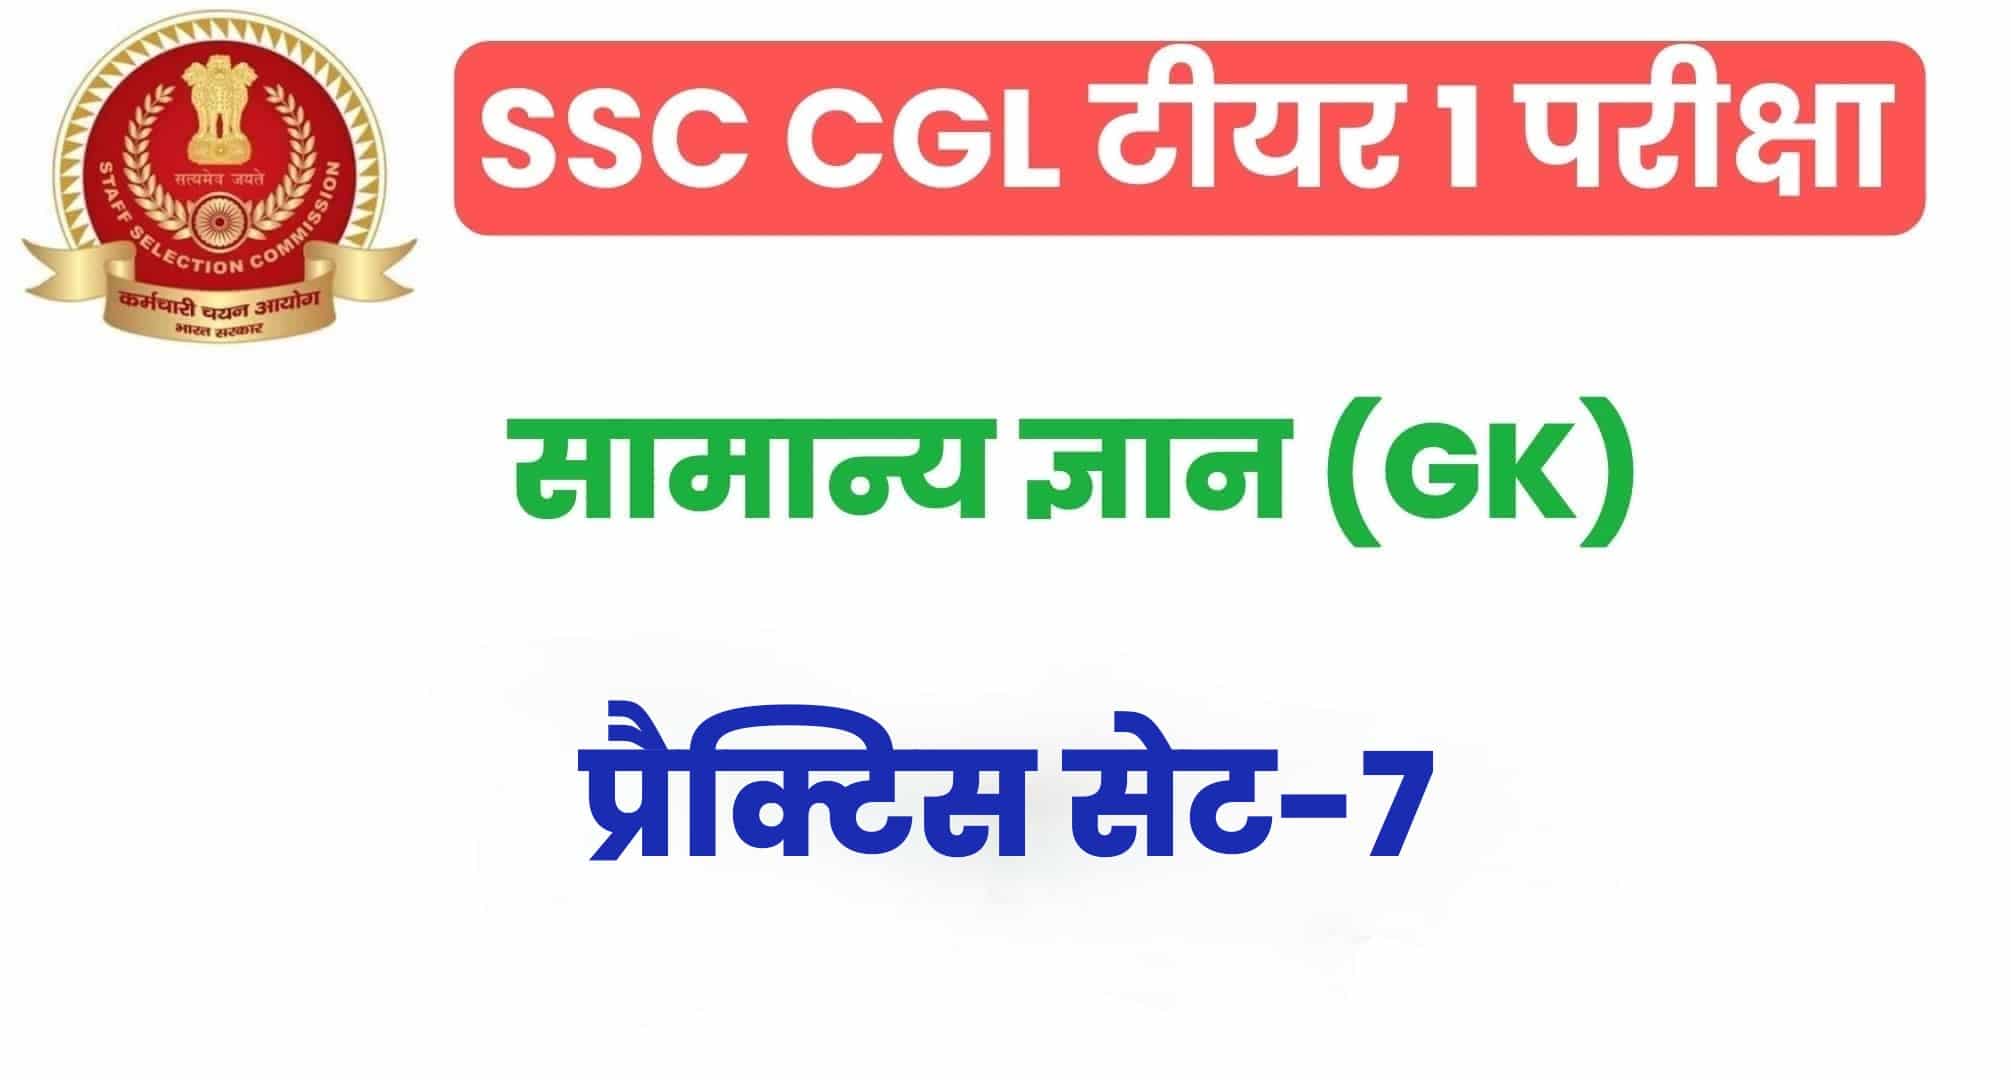 SSC CGL GK/GS प्रैक्टिस सेट 7 :  सामान्य ज्ञान के 25 अतिमहत्वपूर्ण प्रश्न, परीक्षा से पहले जरूर अध्ययन करें